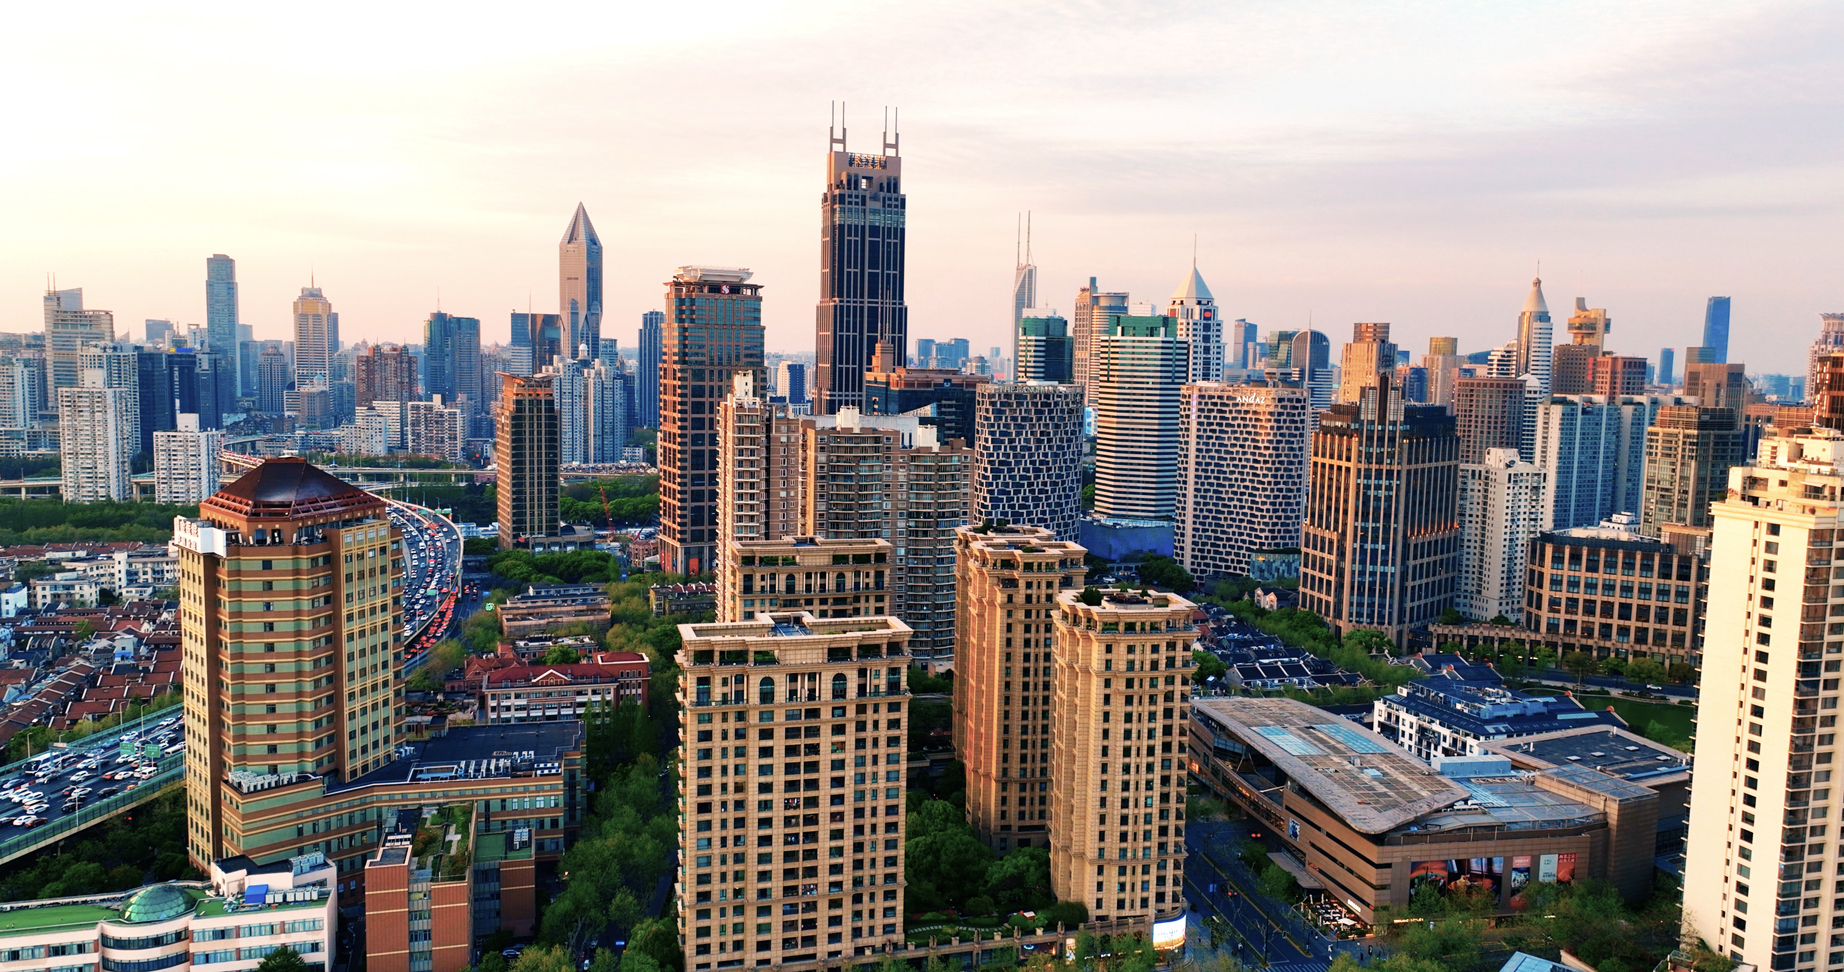 淮海新天地进口示范区是上海“进口浓度”最高的地方。